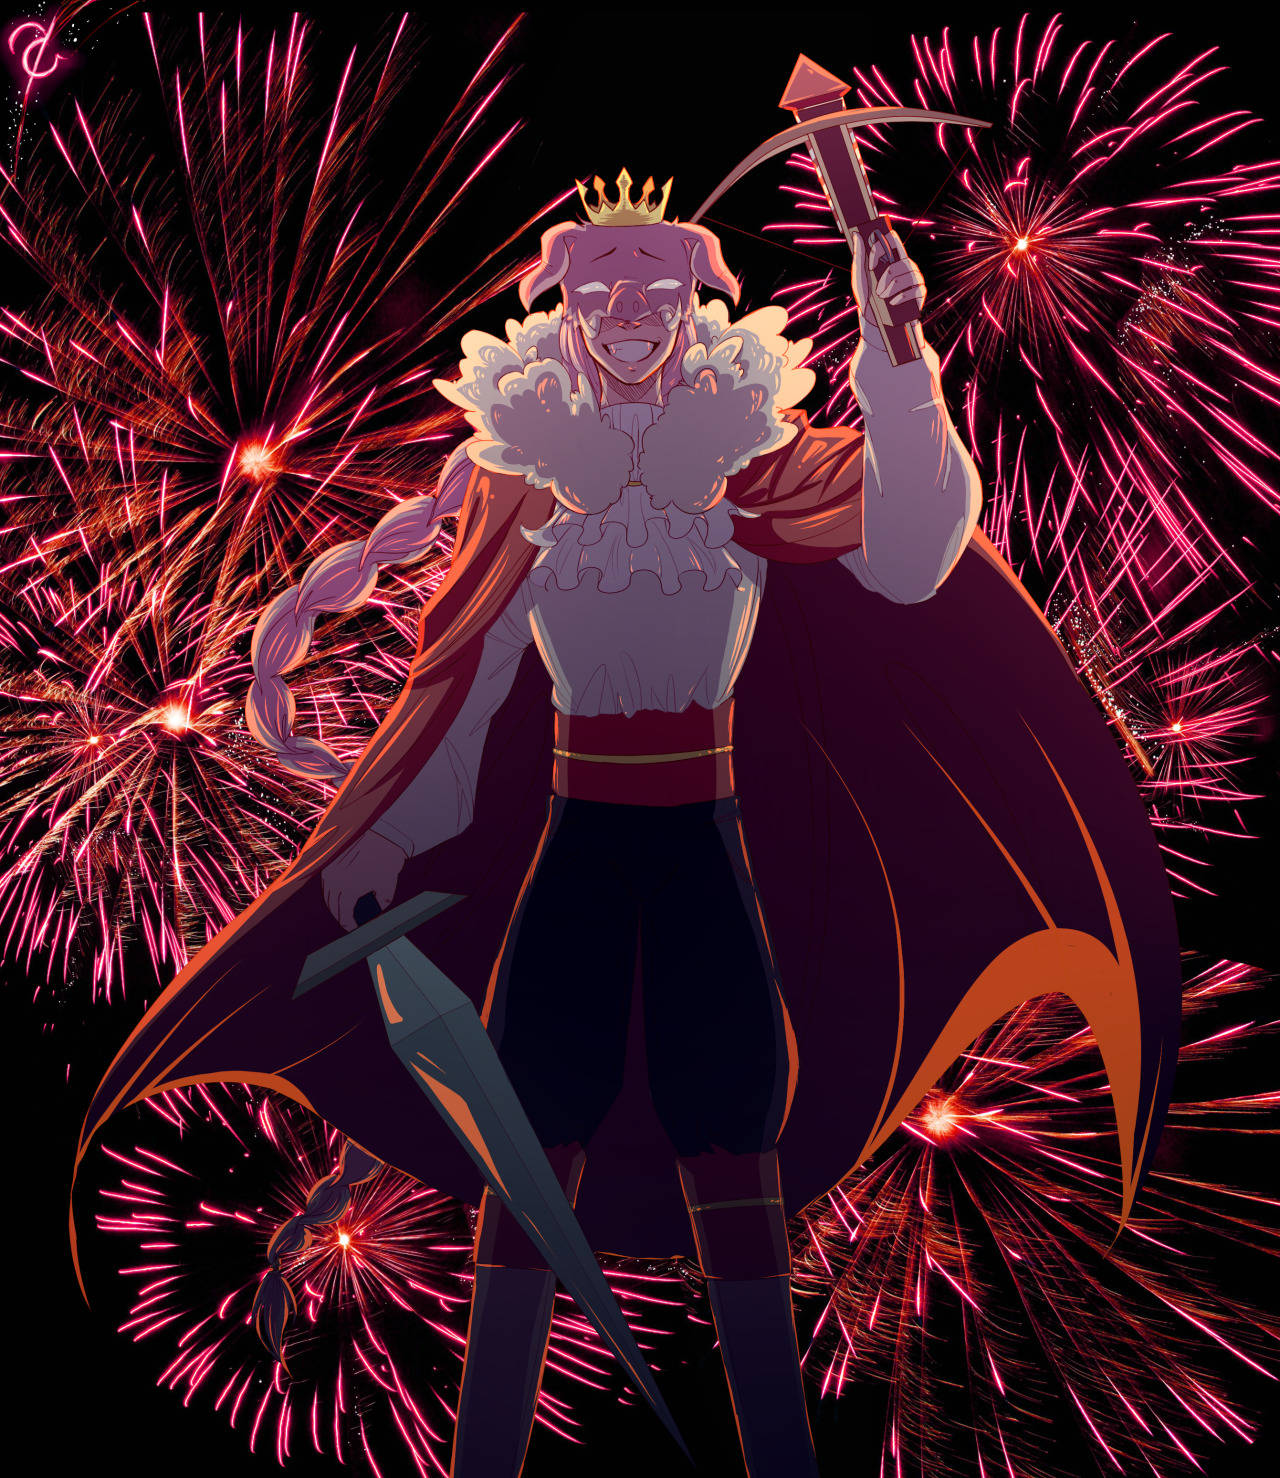 Anime Technoblade Under Fireworks Wallpaper